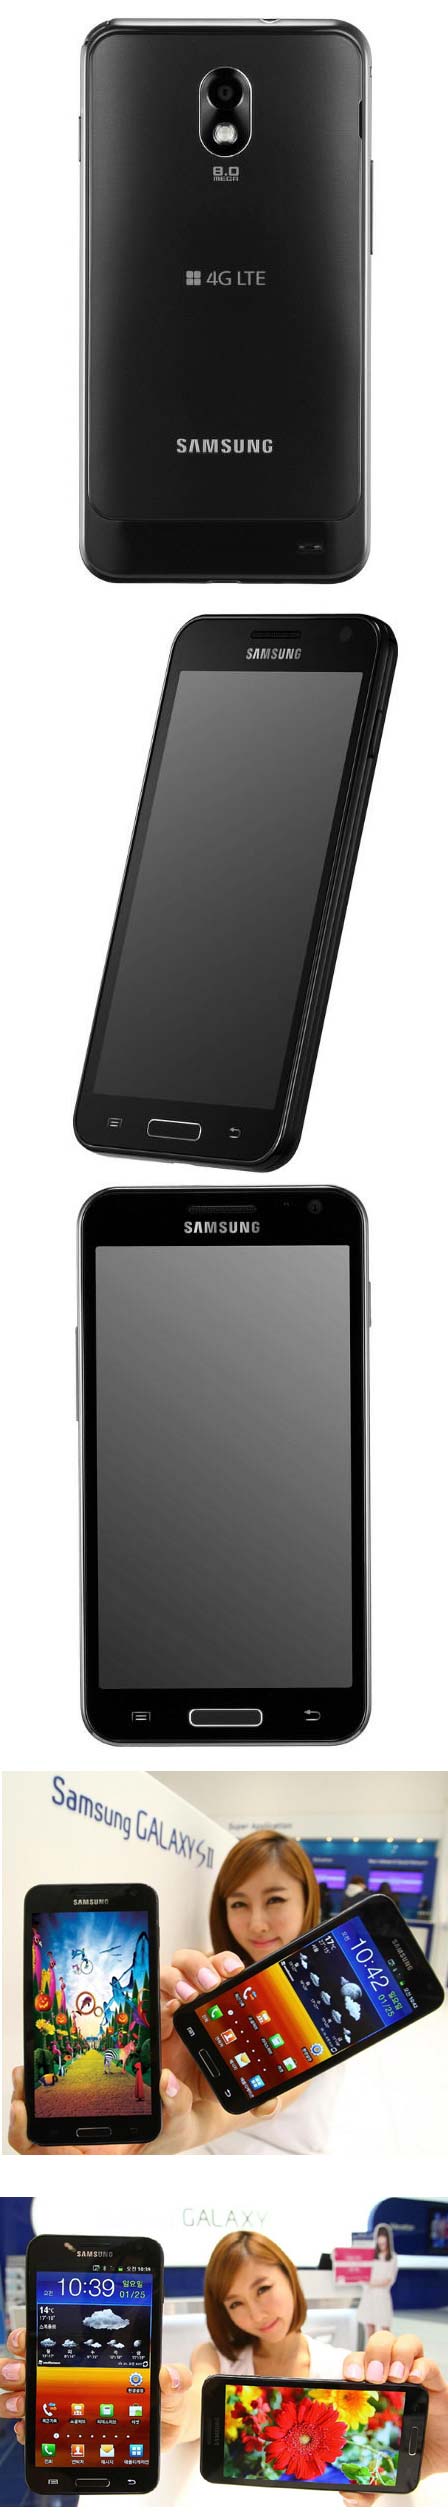 Samsung Galaxy S II HD - ещё одна 